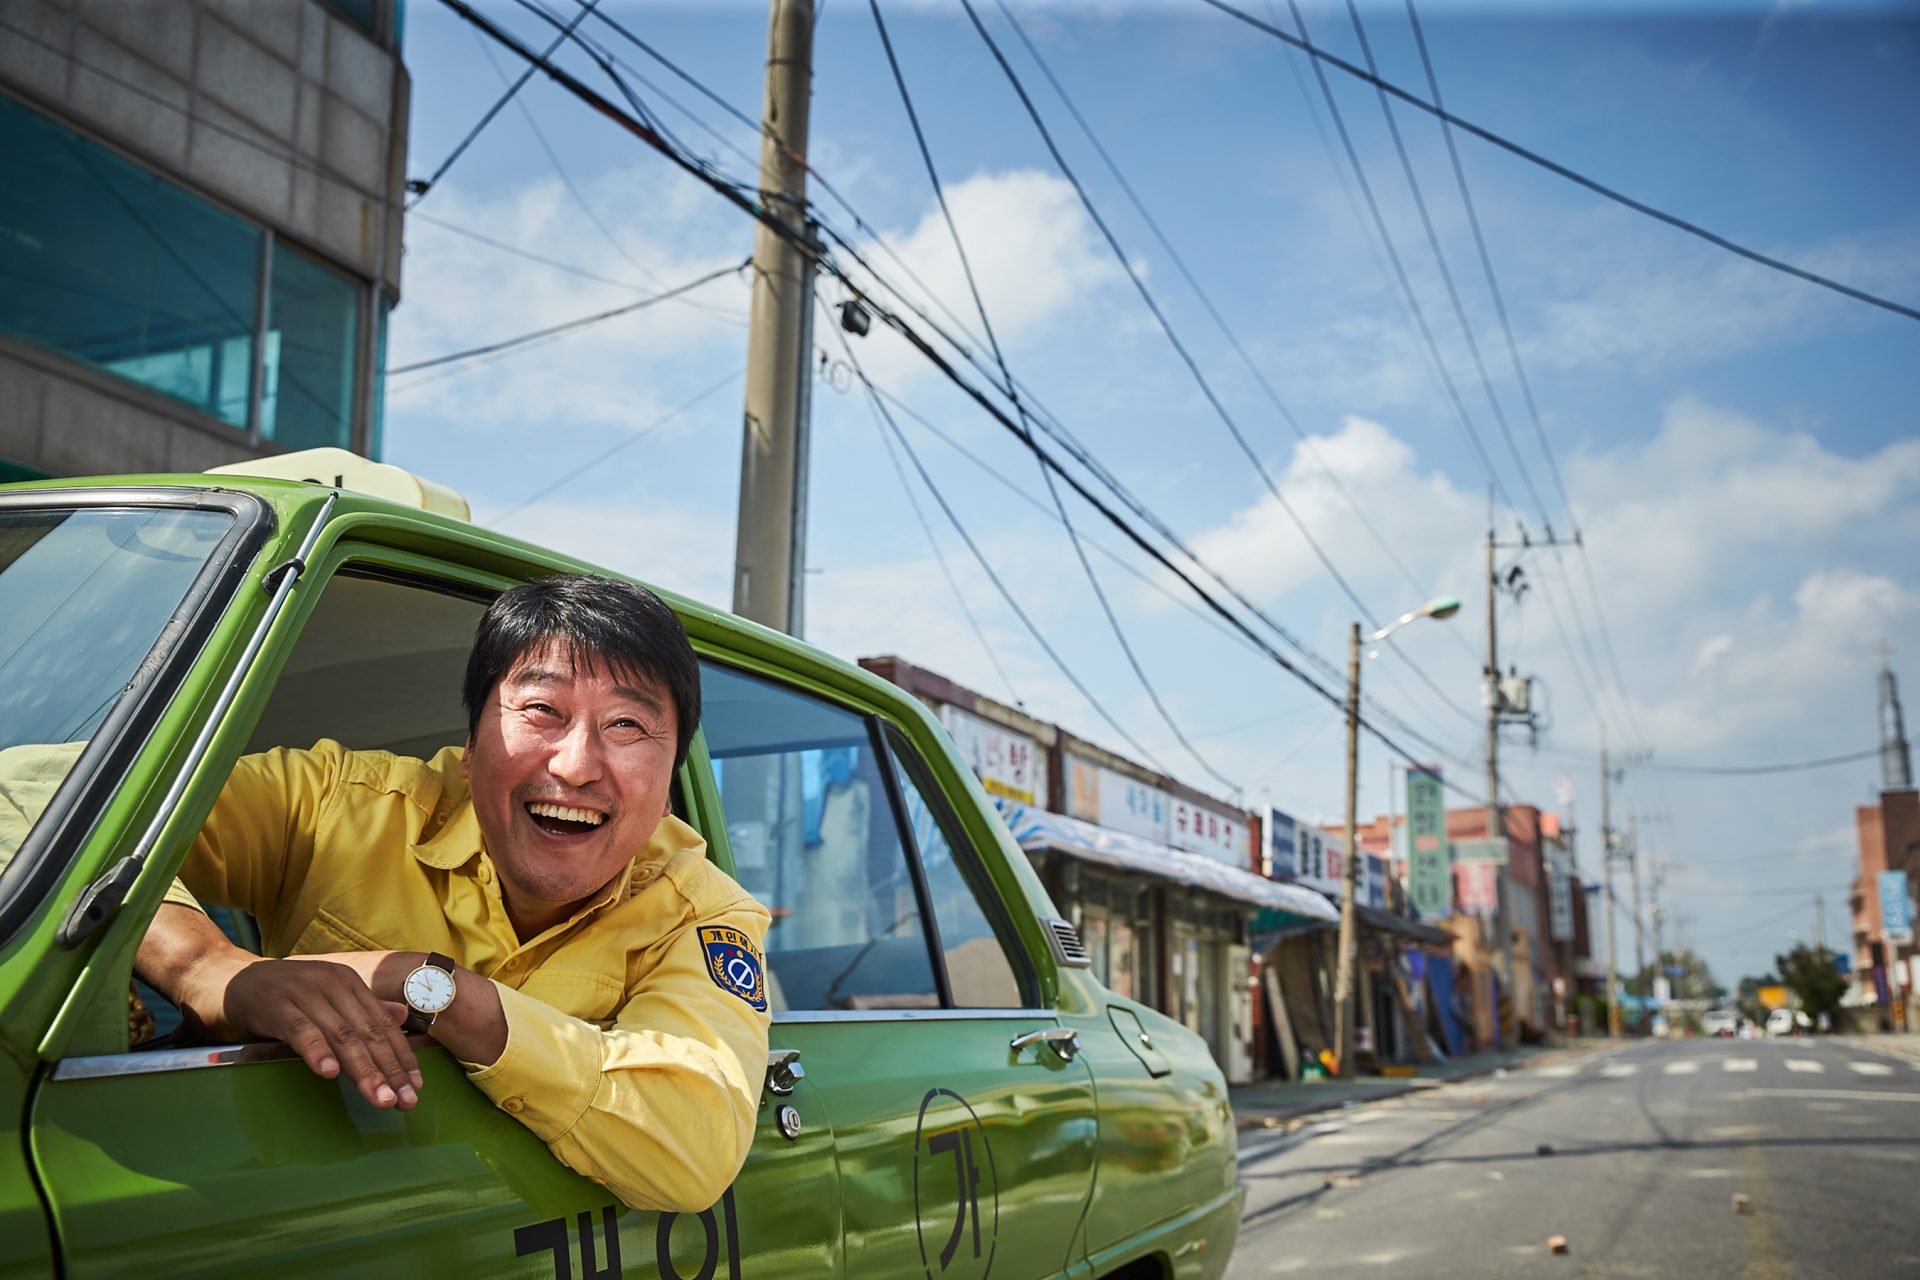 Extrait du film "A Taxi Driver" par Jang Hoon. (Crédits DR)